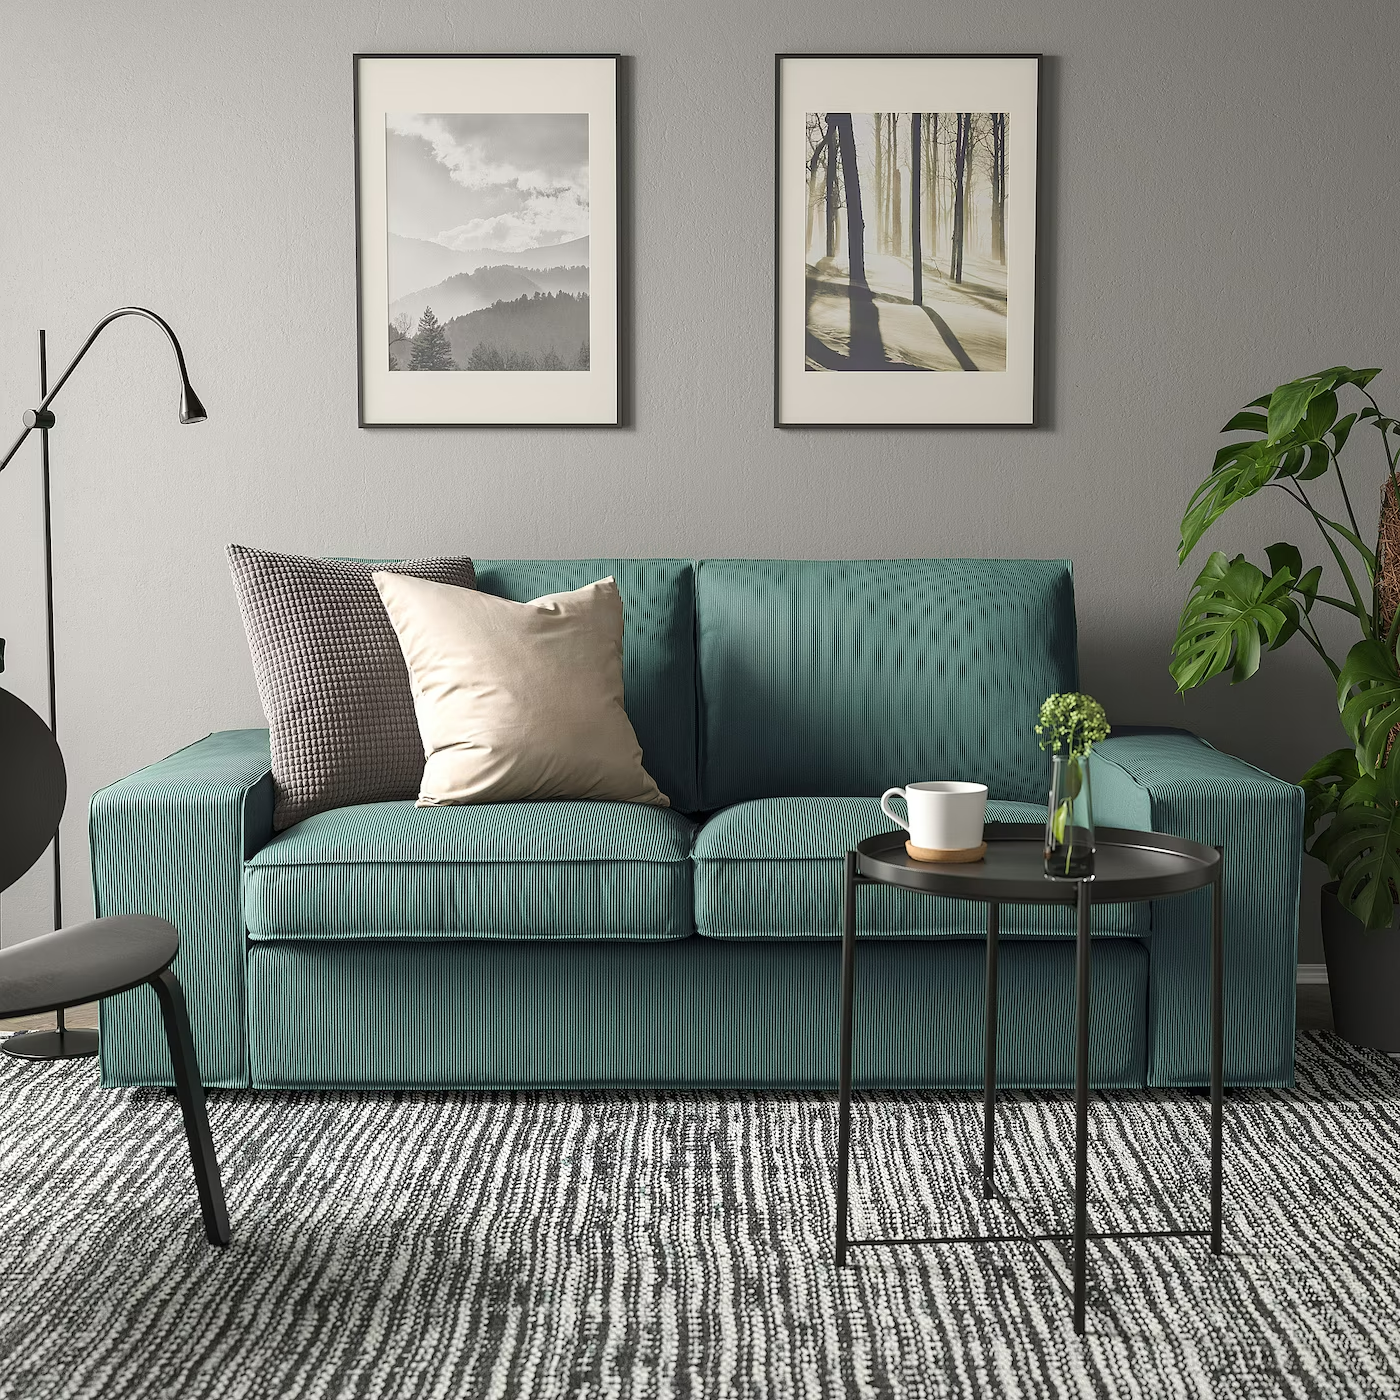 Lechuguilla Contribuyente vesícula biliar Los 12 sofás de Ikea más bonitos y cómodos para tu salón